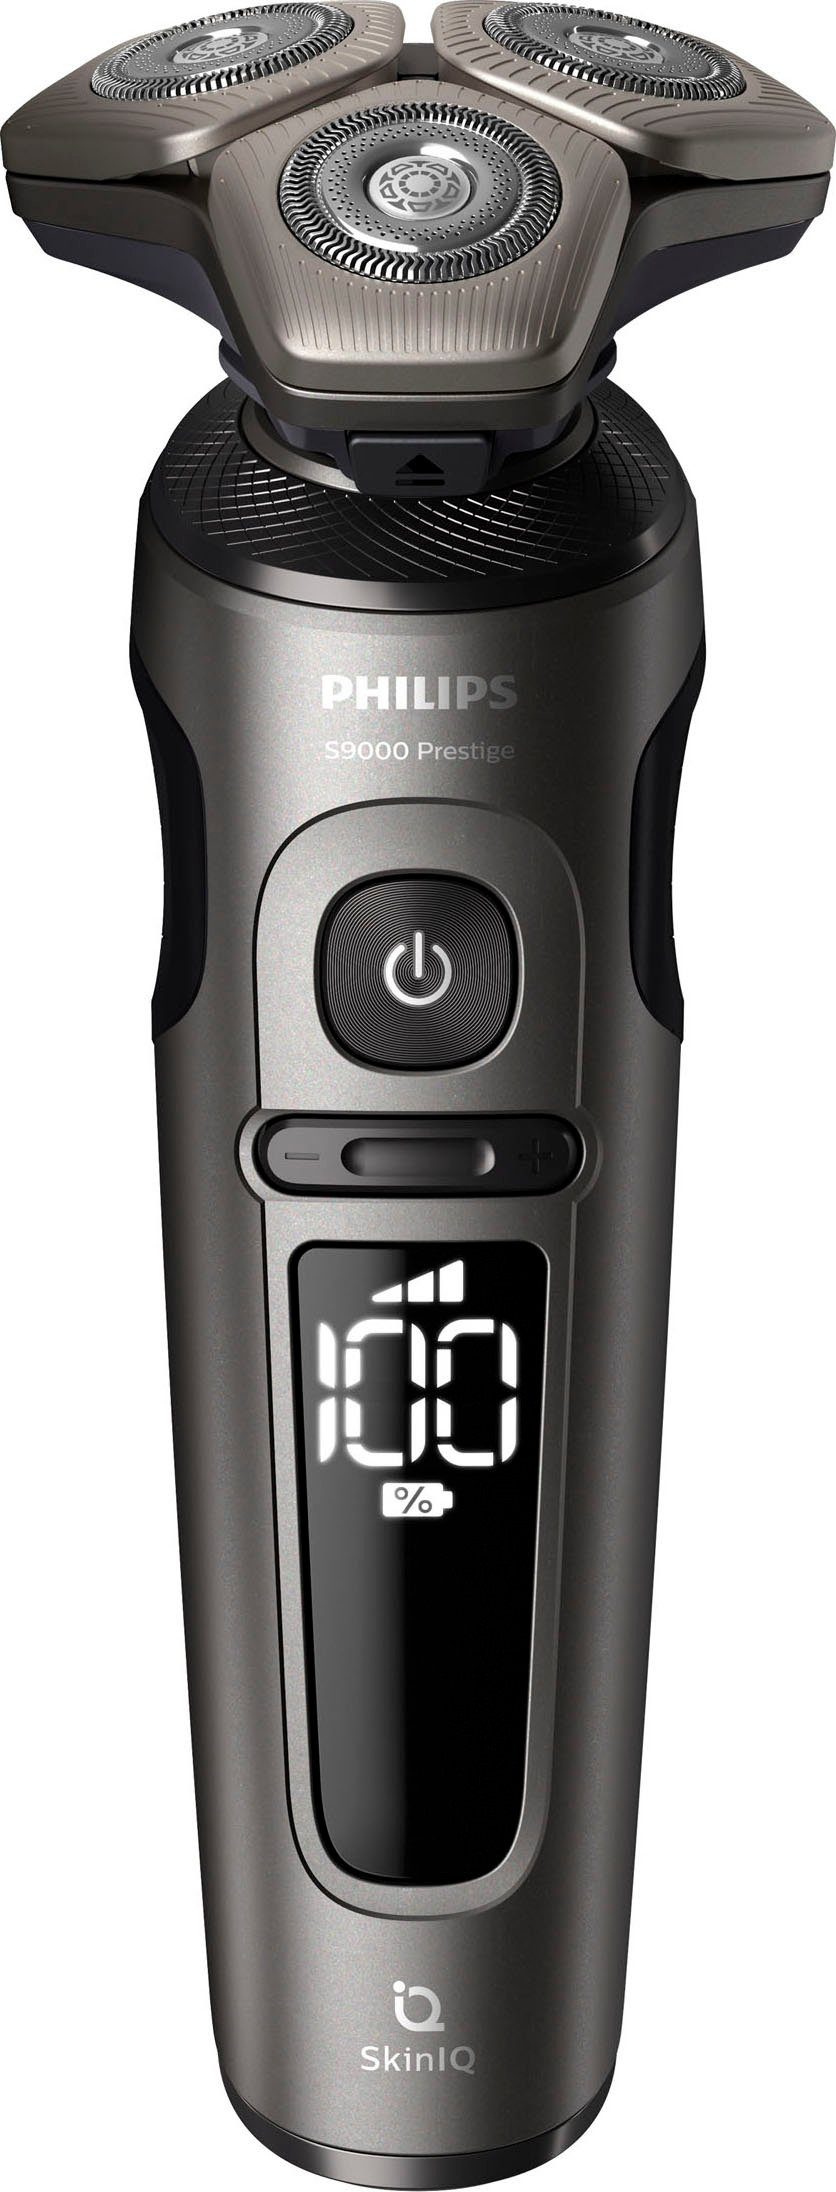 SP9872/15, 2, Series Philips Elektrorasierer Prestige Technologie Etui, mit 9000 Aufsätze: SkinIQ